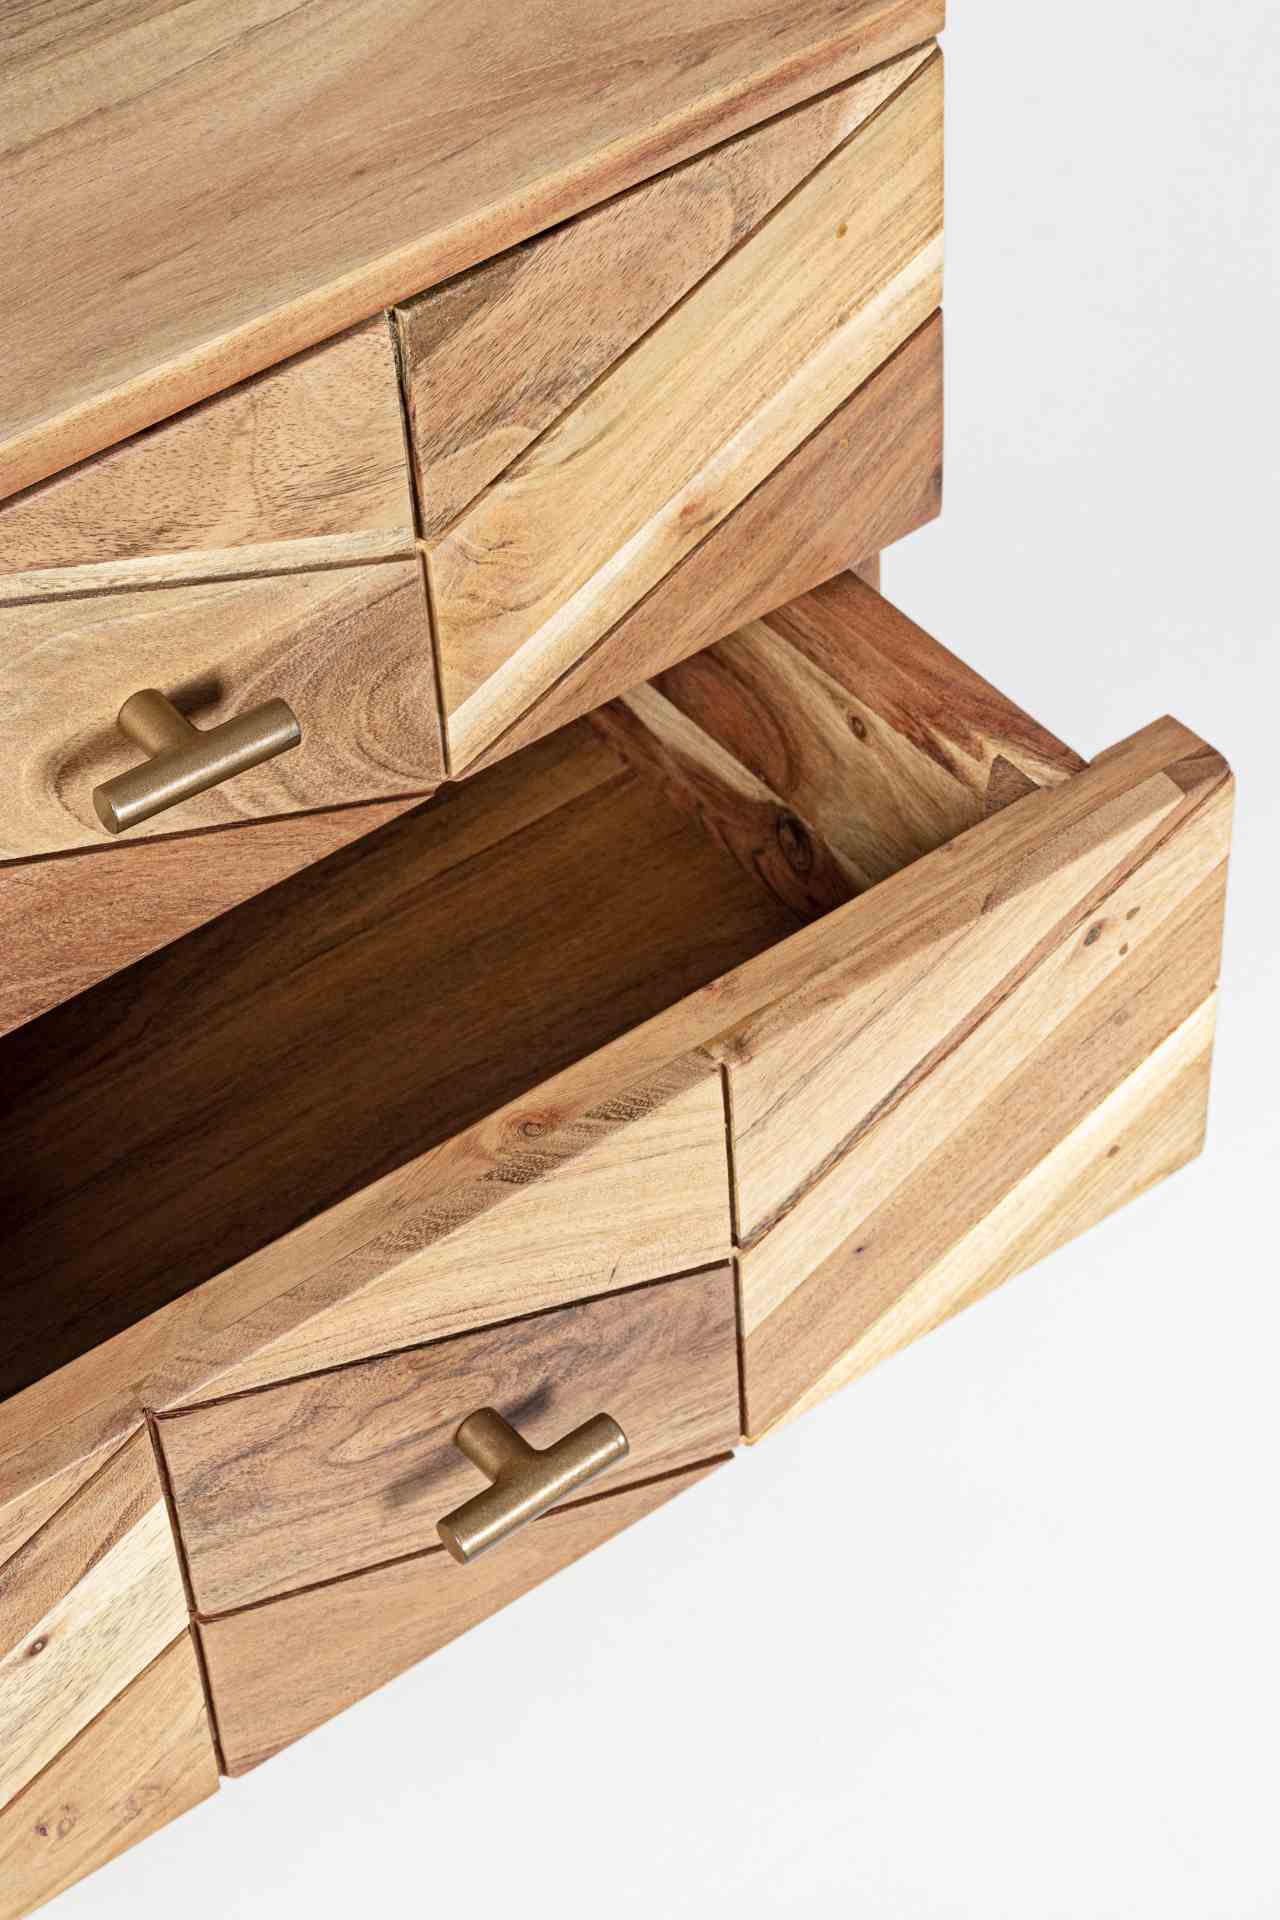 Der Nachttisch Raida überzeugt mit seinem modernen Design. Gefertigt wurde er aus Akazienholz, welches einen natürlichen Farbton besitzt. Das Gestell ist aus Metall und hat eine goldene Farbe. Der Nachttisch verfügt über zwei Schubladen. Die Breite beträg